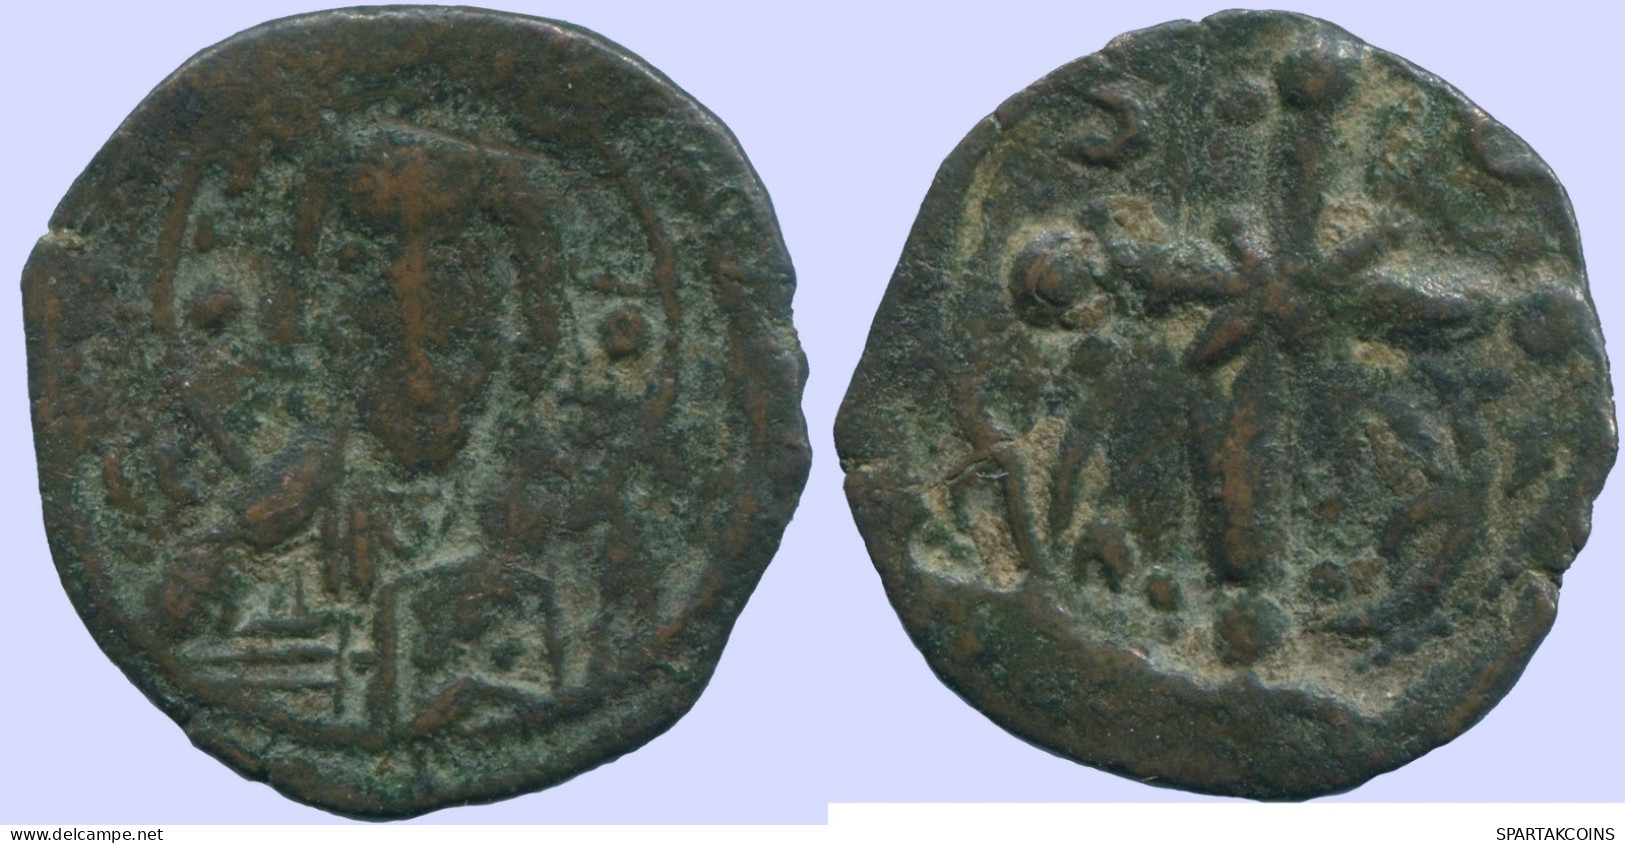 NICEPHORUS III ANONYMOUS FOLLIS CLASS I 1078-1081 3.05g/20.73mm #ANC13672.16.F.A - Bizantinas